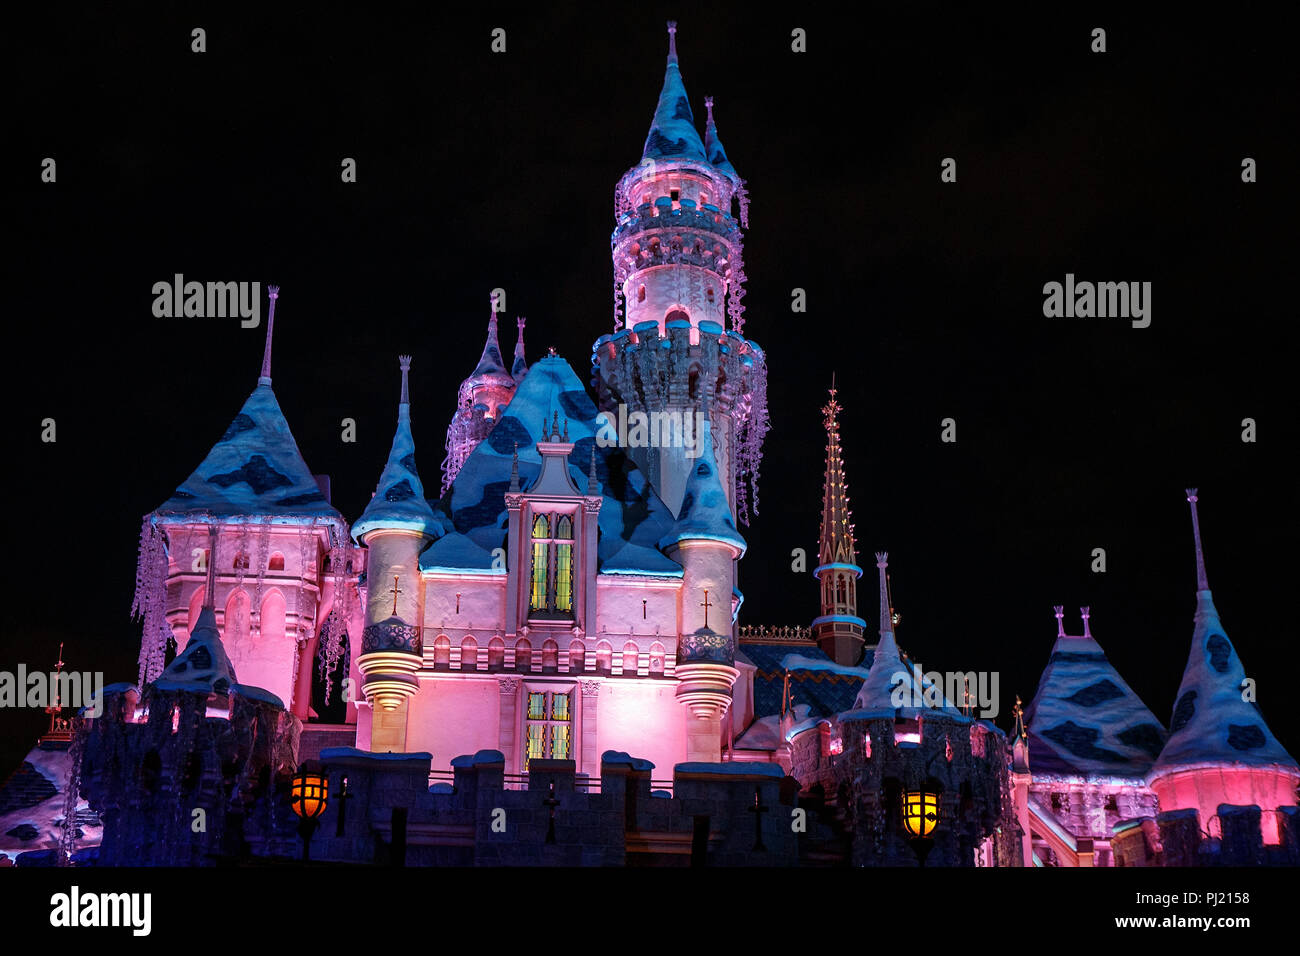 Du Château de La Belle au bois dormant la nuit, Disneyland, Anaheim, Californie, États-Unis d'Amérique Banque D'Images